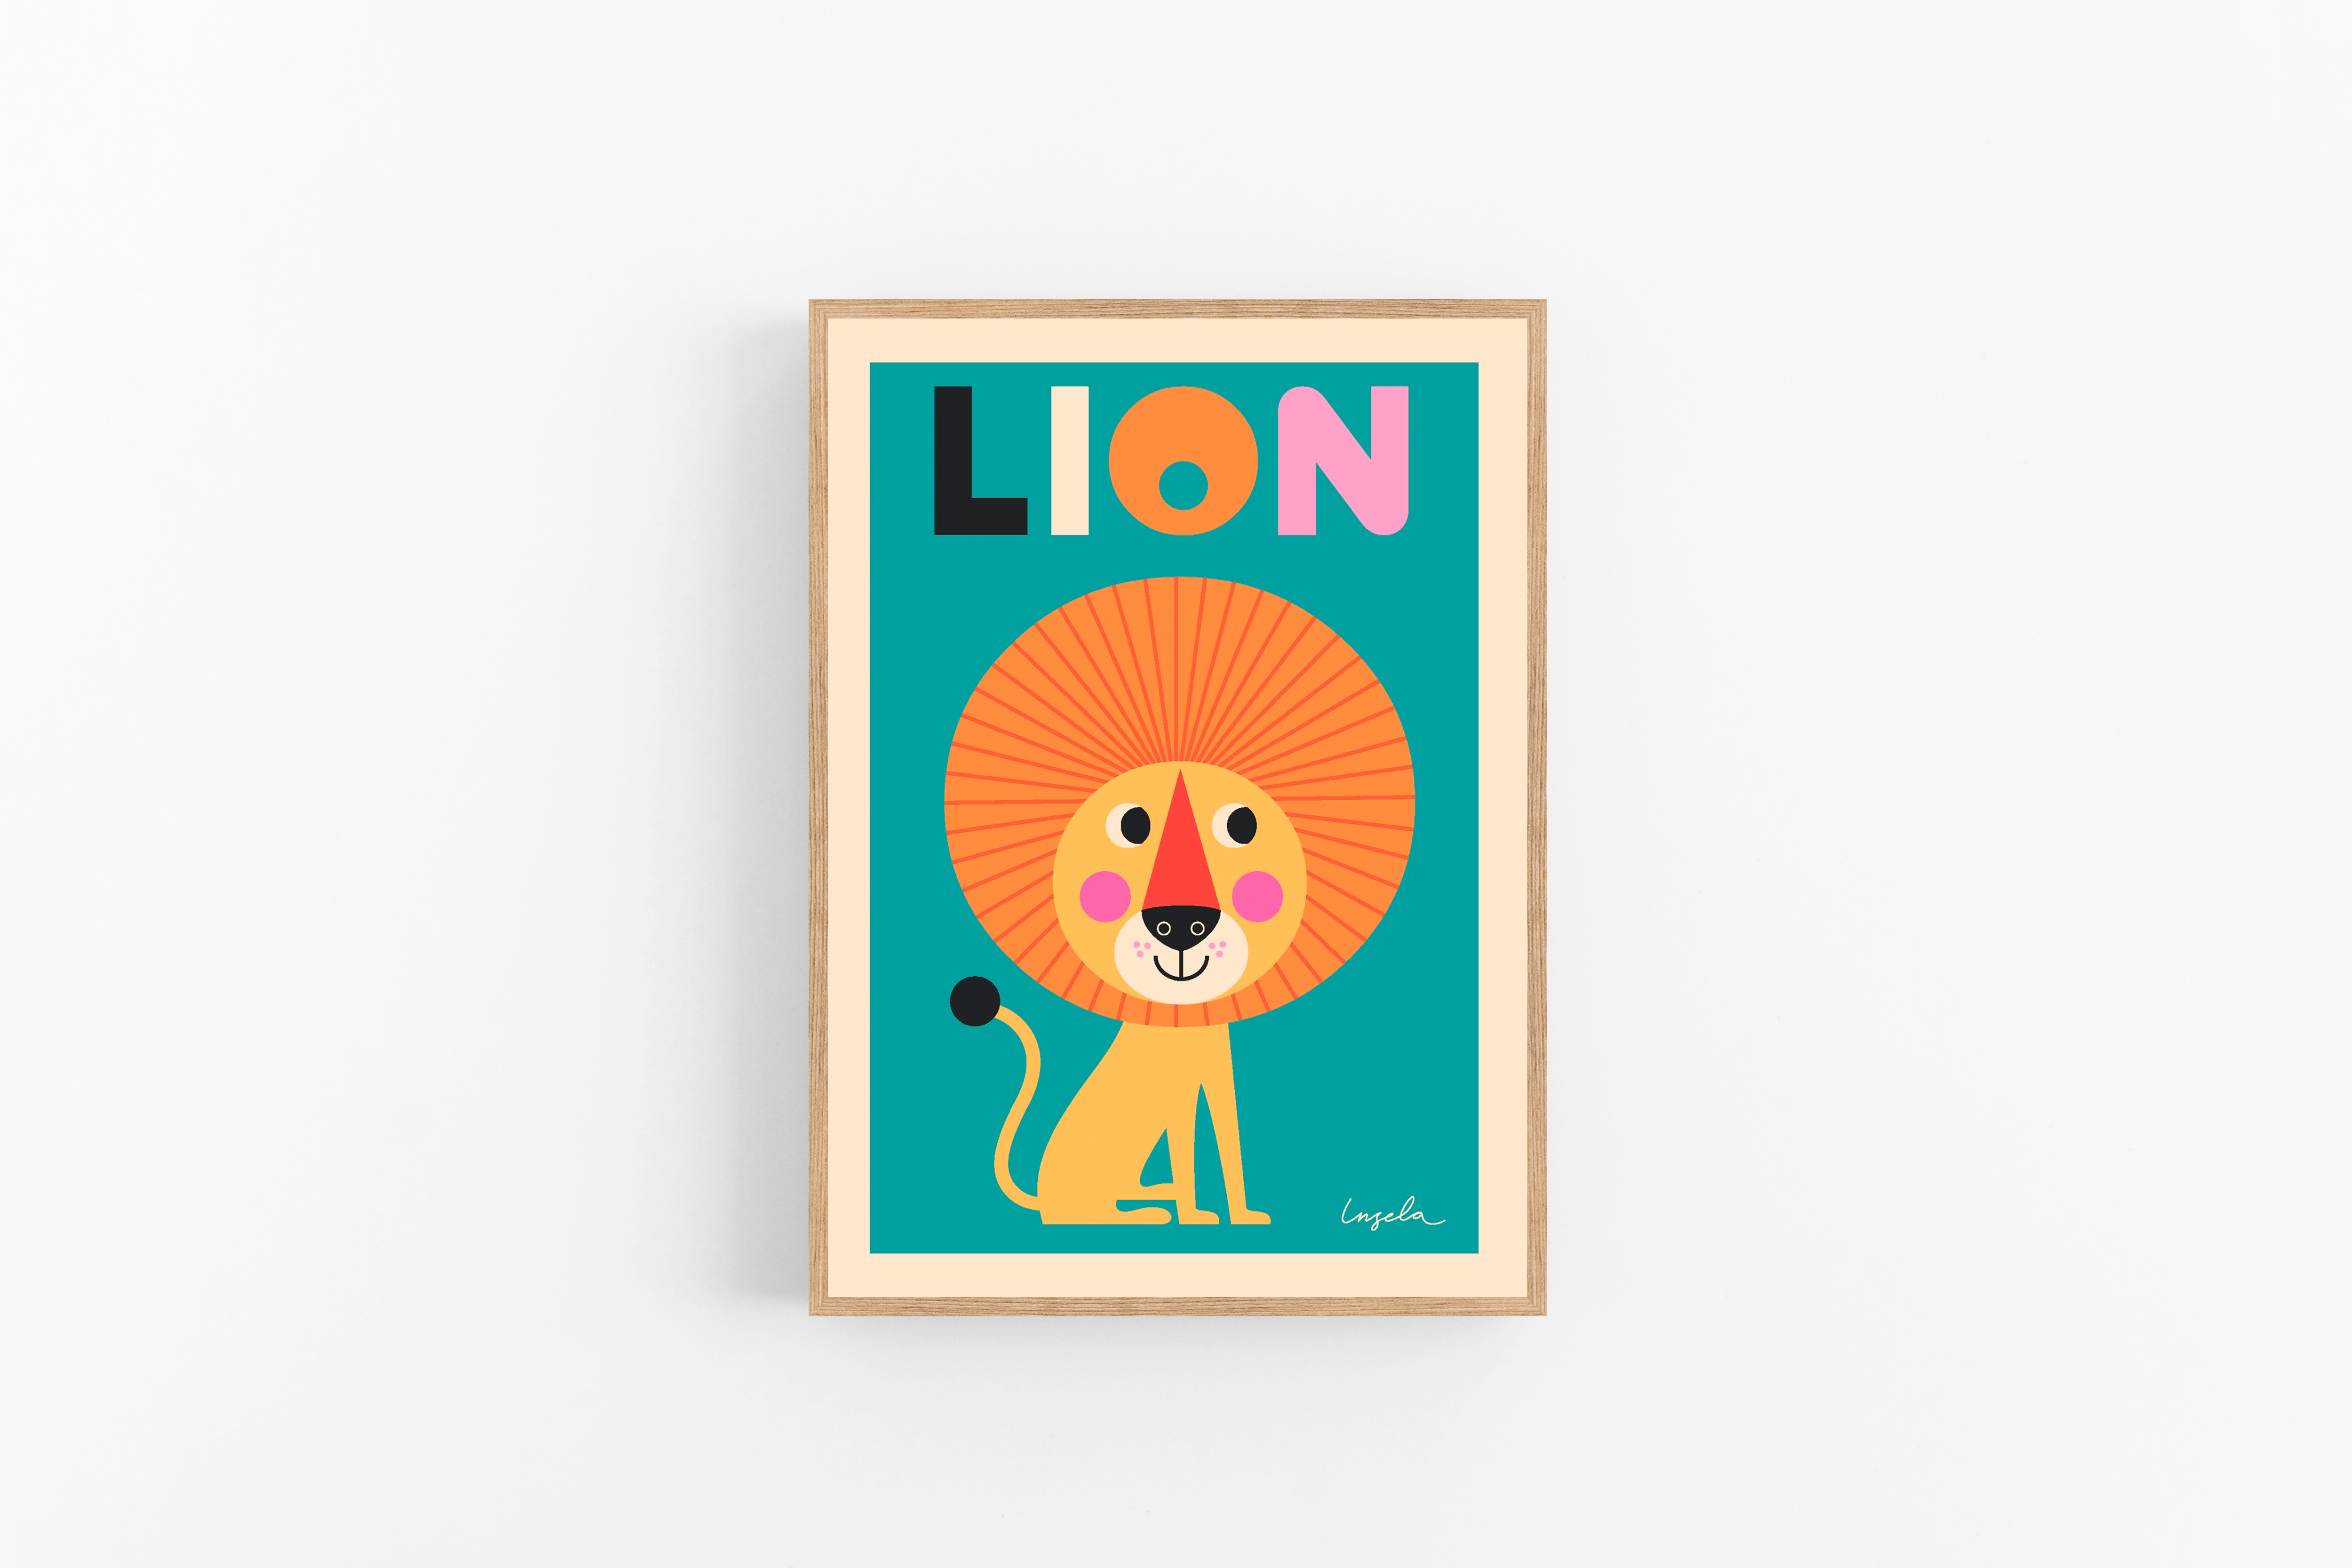 Lion poster (Ingela Arrhenius) - Plakater ApS